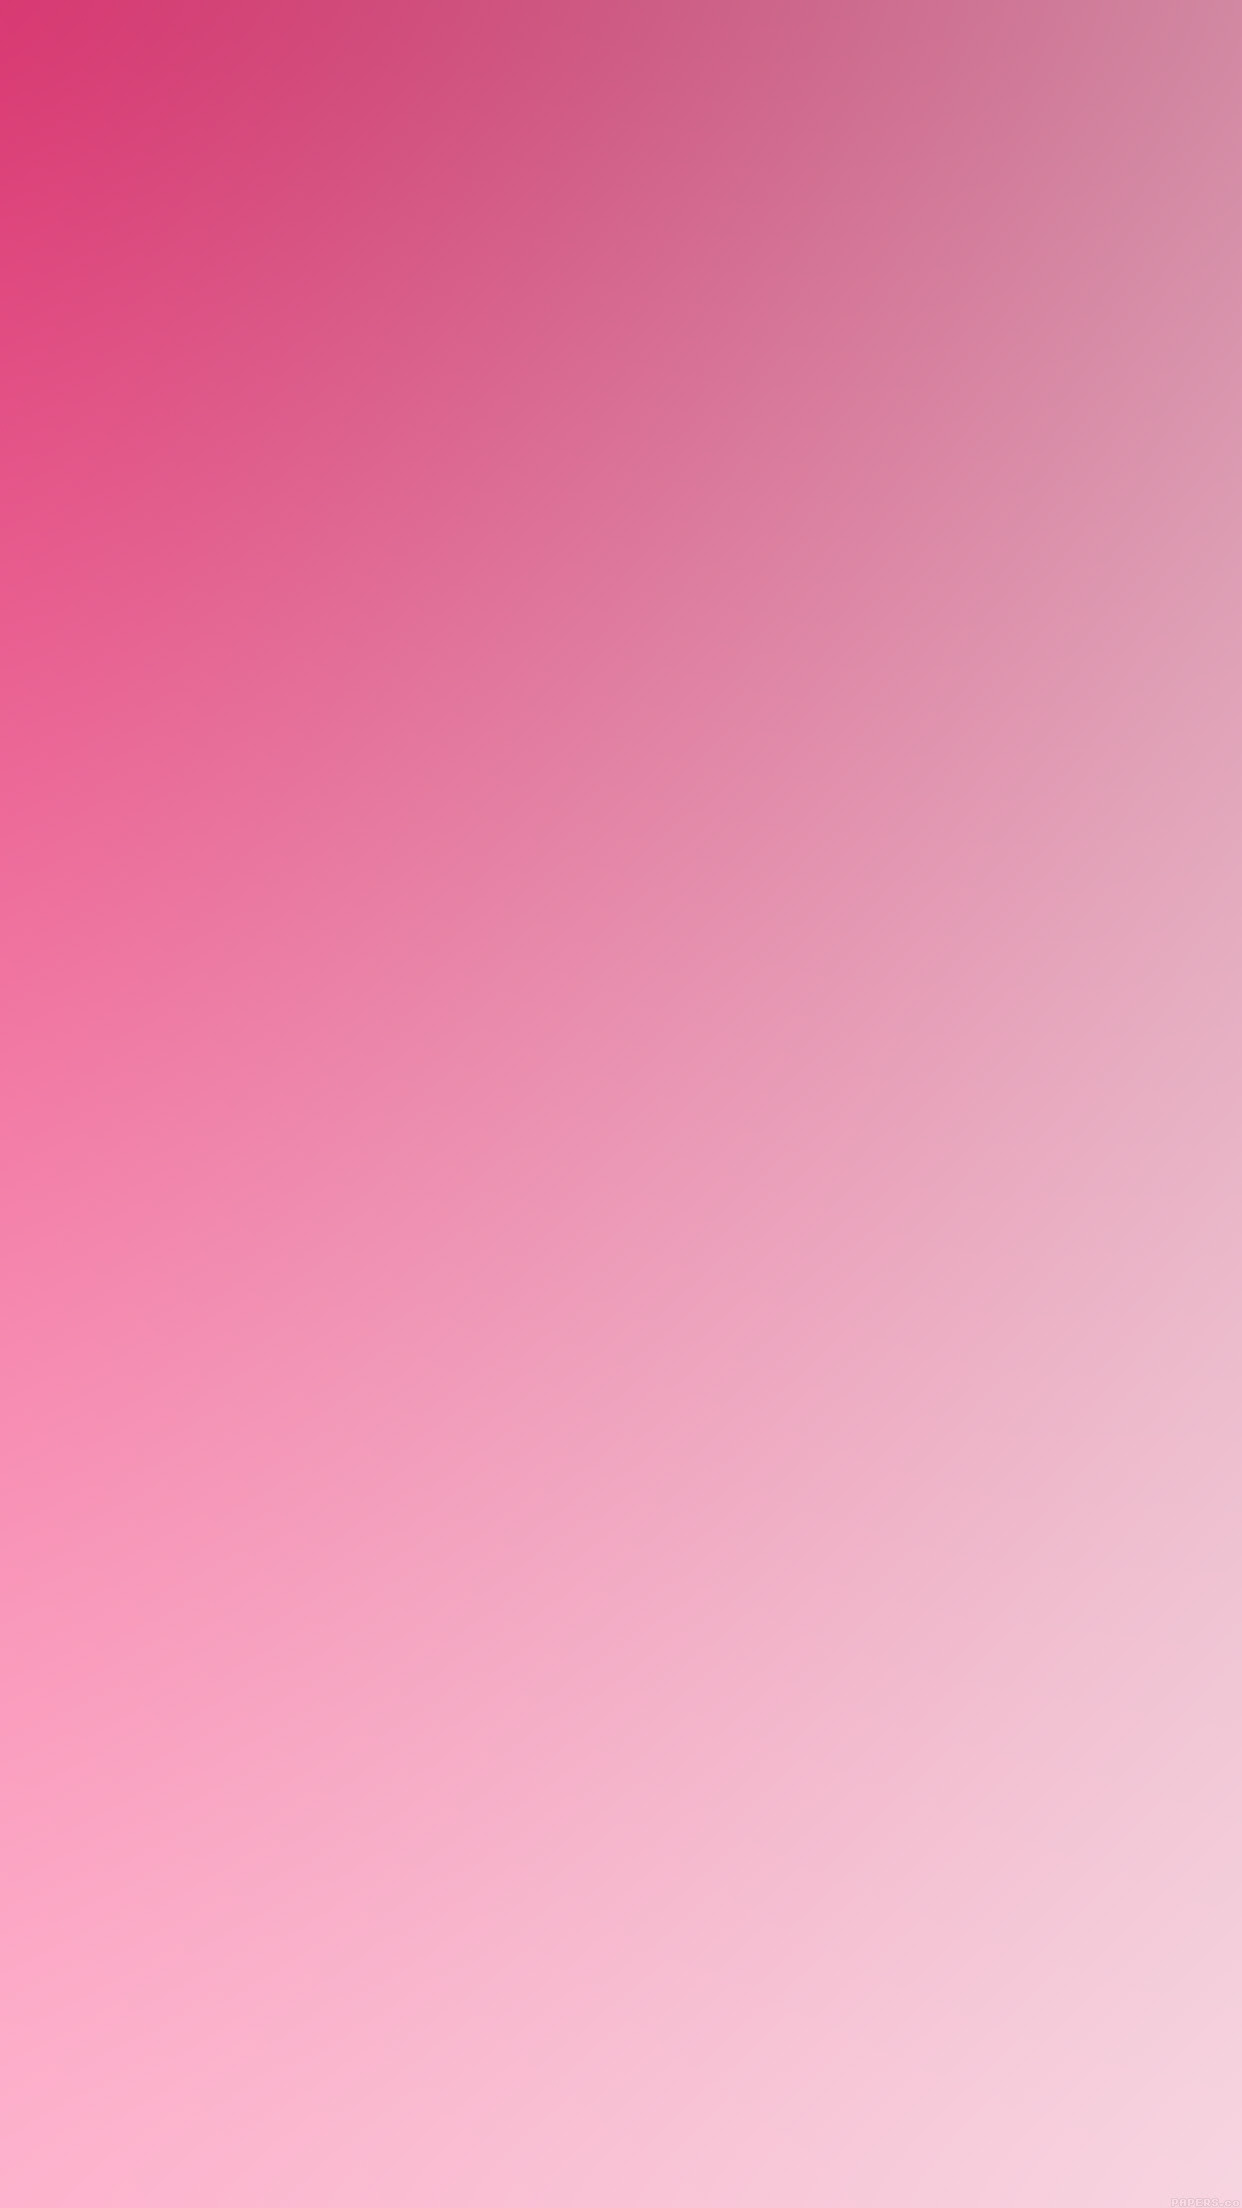 ディズニー画像ランド 50 素晴らしいiphone ピンク グラデーション 壁紙